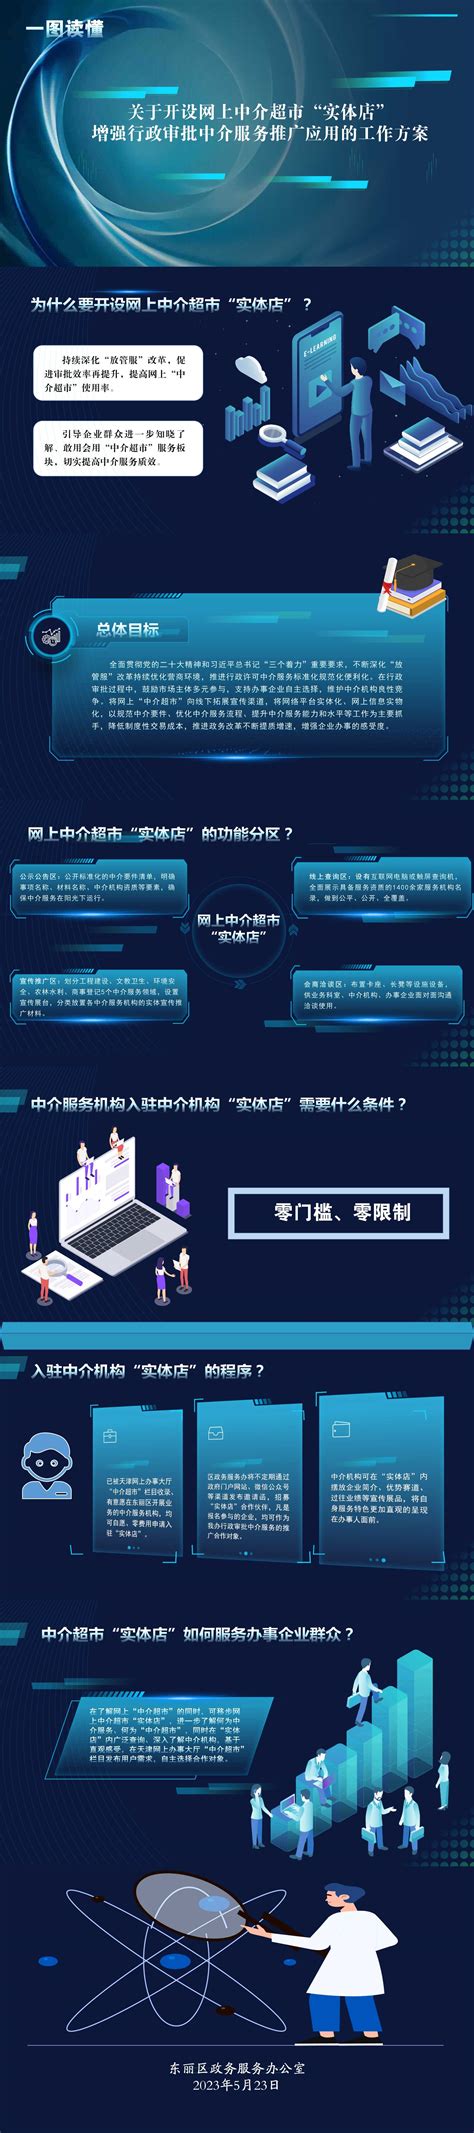 东丽区重点招商项目云签约 签约项目17个 协议投资额50亿元-天津东丽网站-媒体融合平台